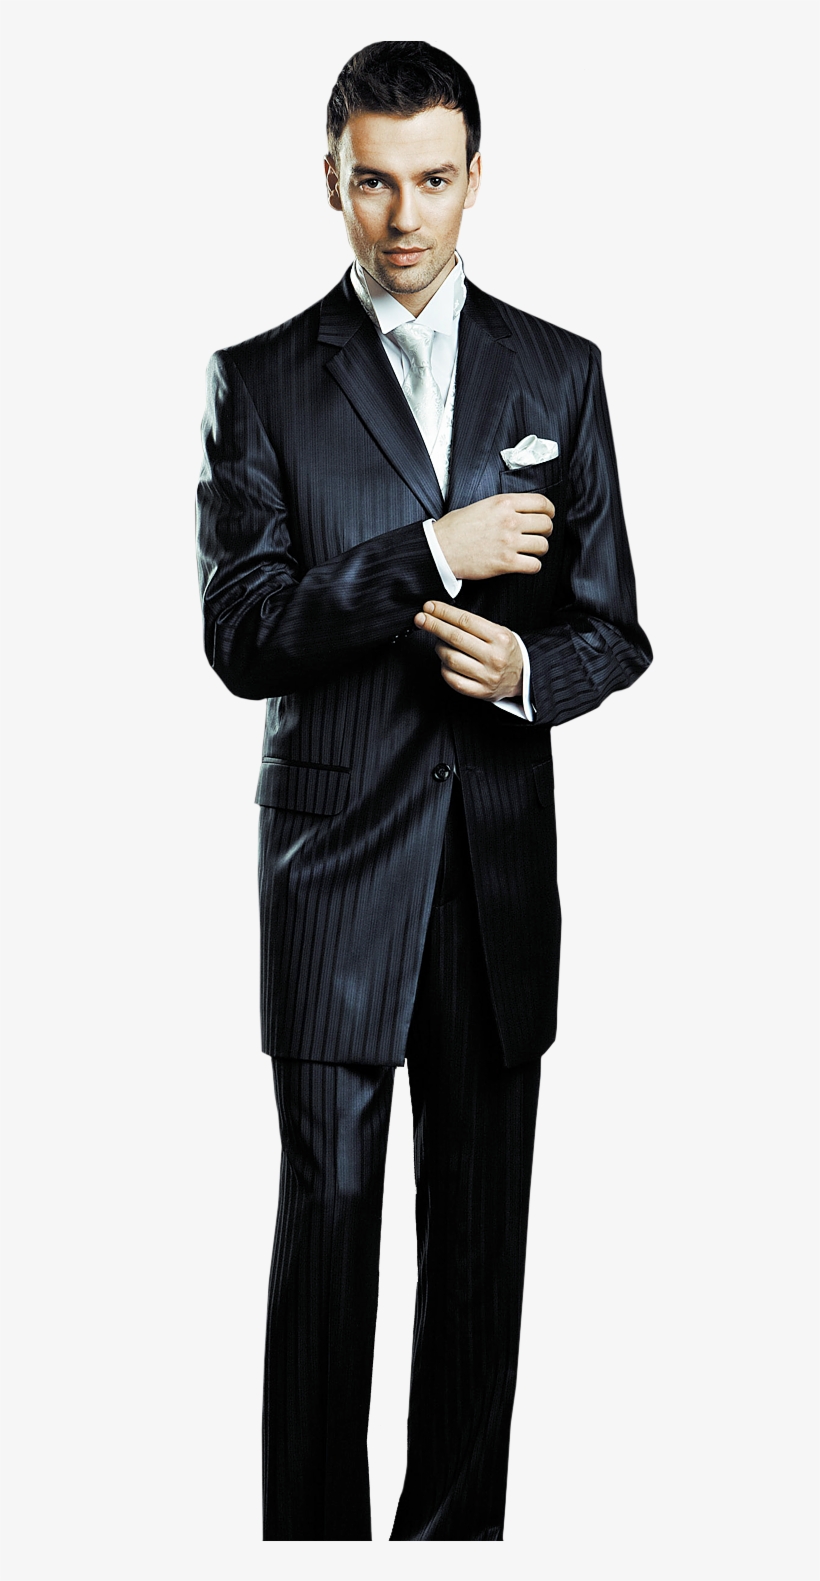 Man In Suit Transparent - Businessman Png, transparent png #2772052